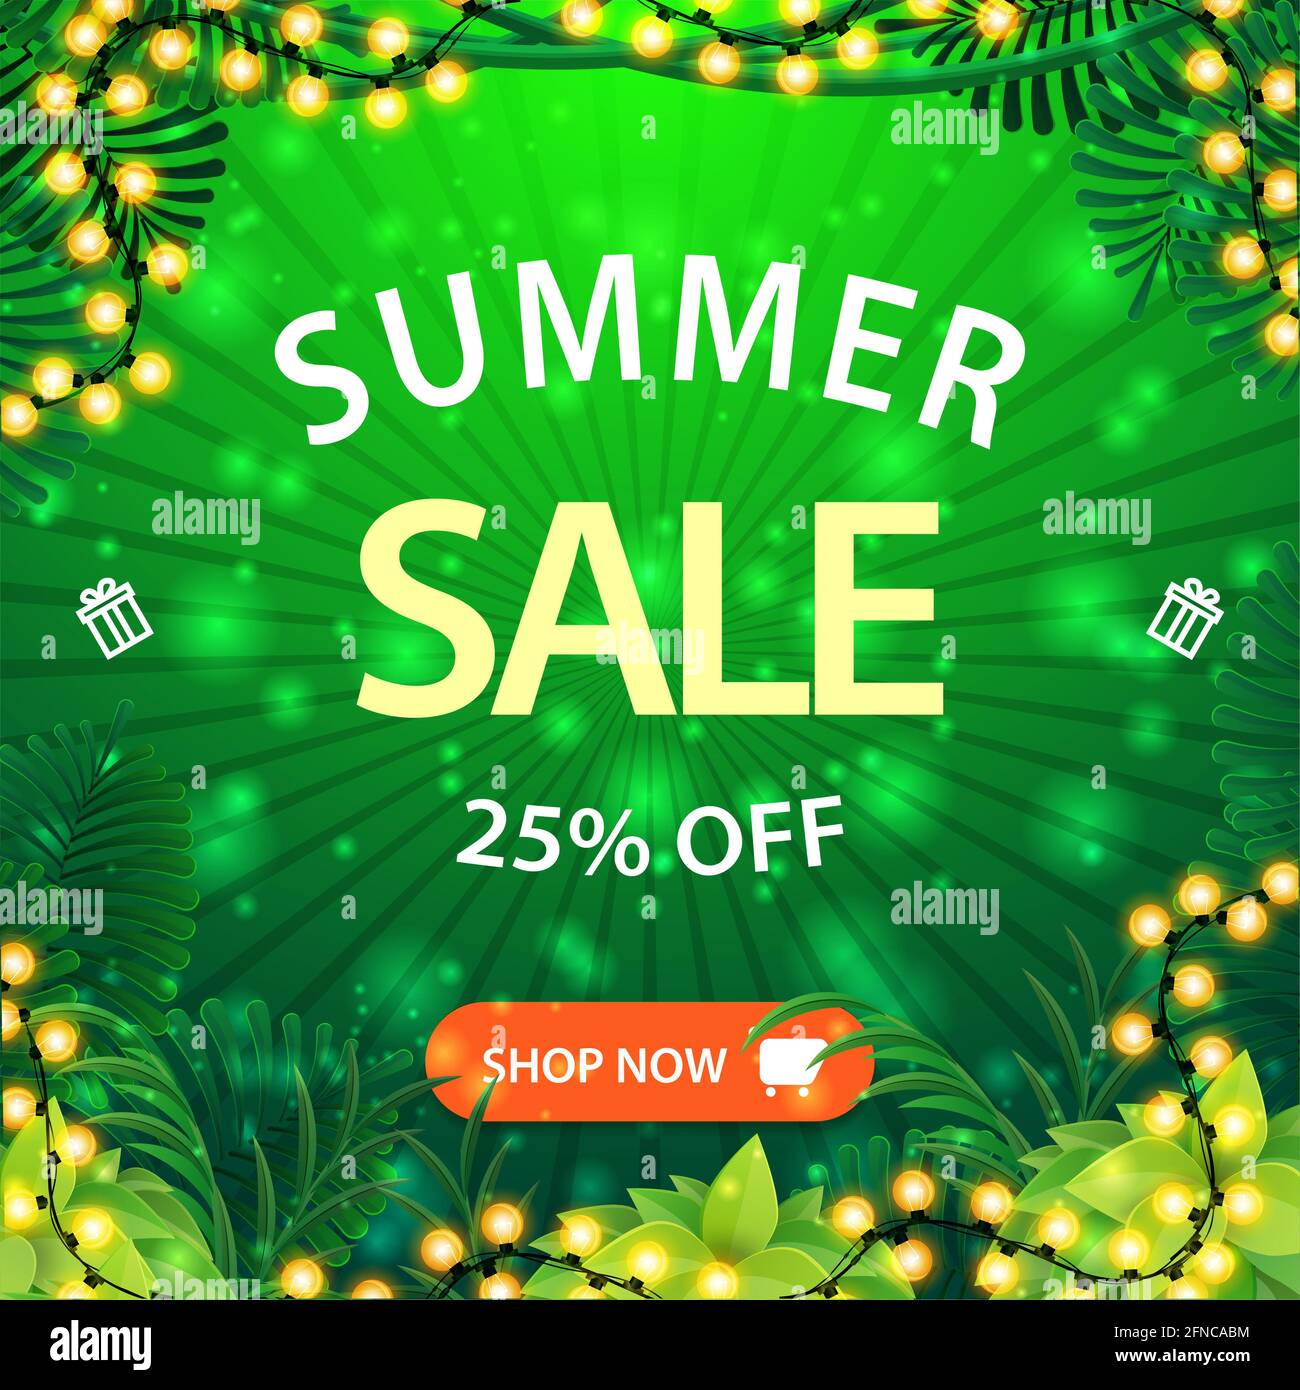 Soldes d'été, jusqu'à 25 rabais, bannière Web de remise carrée verte avec cadre de jungle tropicale, grande offre, bouton et cadre de guirlande lumineuse Banque D'Images